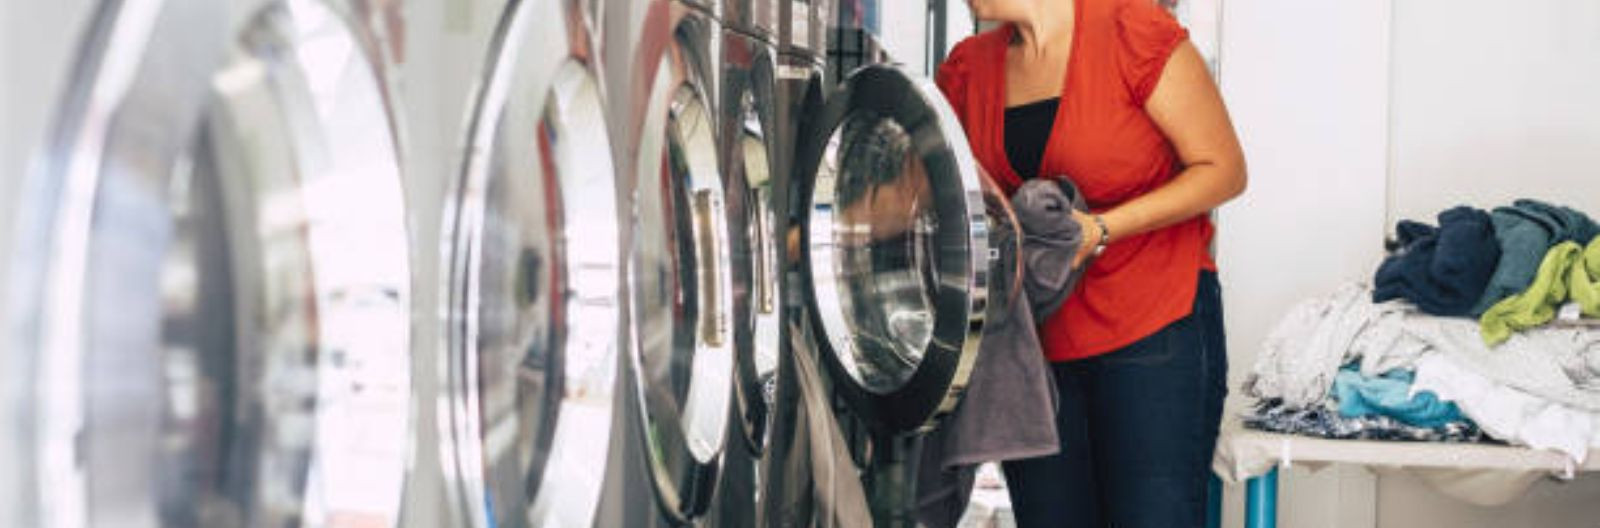 Riiete pesemine selvepesulas on muutunud üha populaarsemaks. Traditsioonilise koduses pesemise asemel eelistavad inimesed üha enam selvepesulate teenuseid, sest